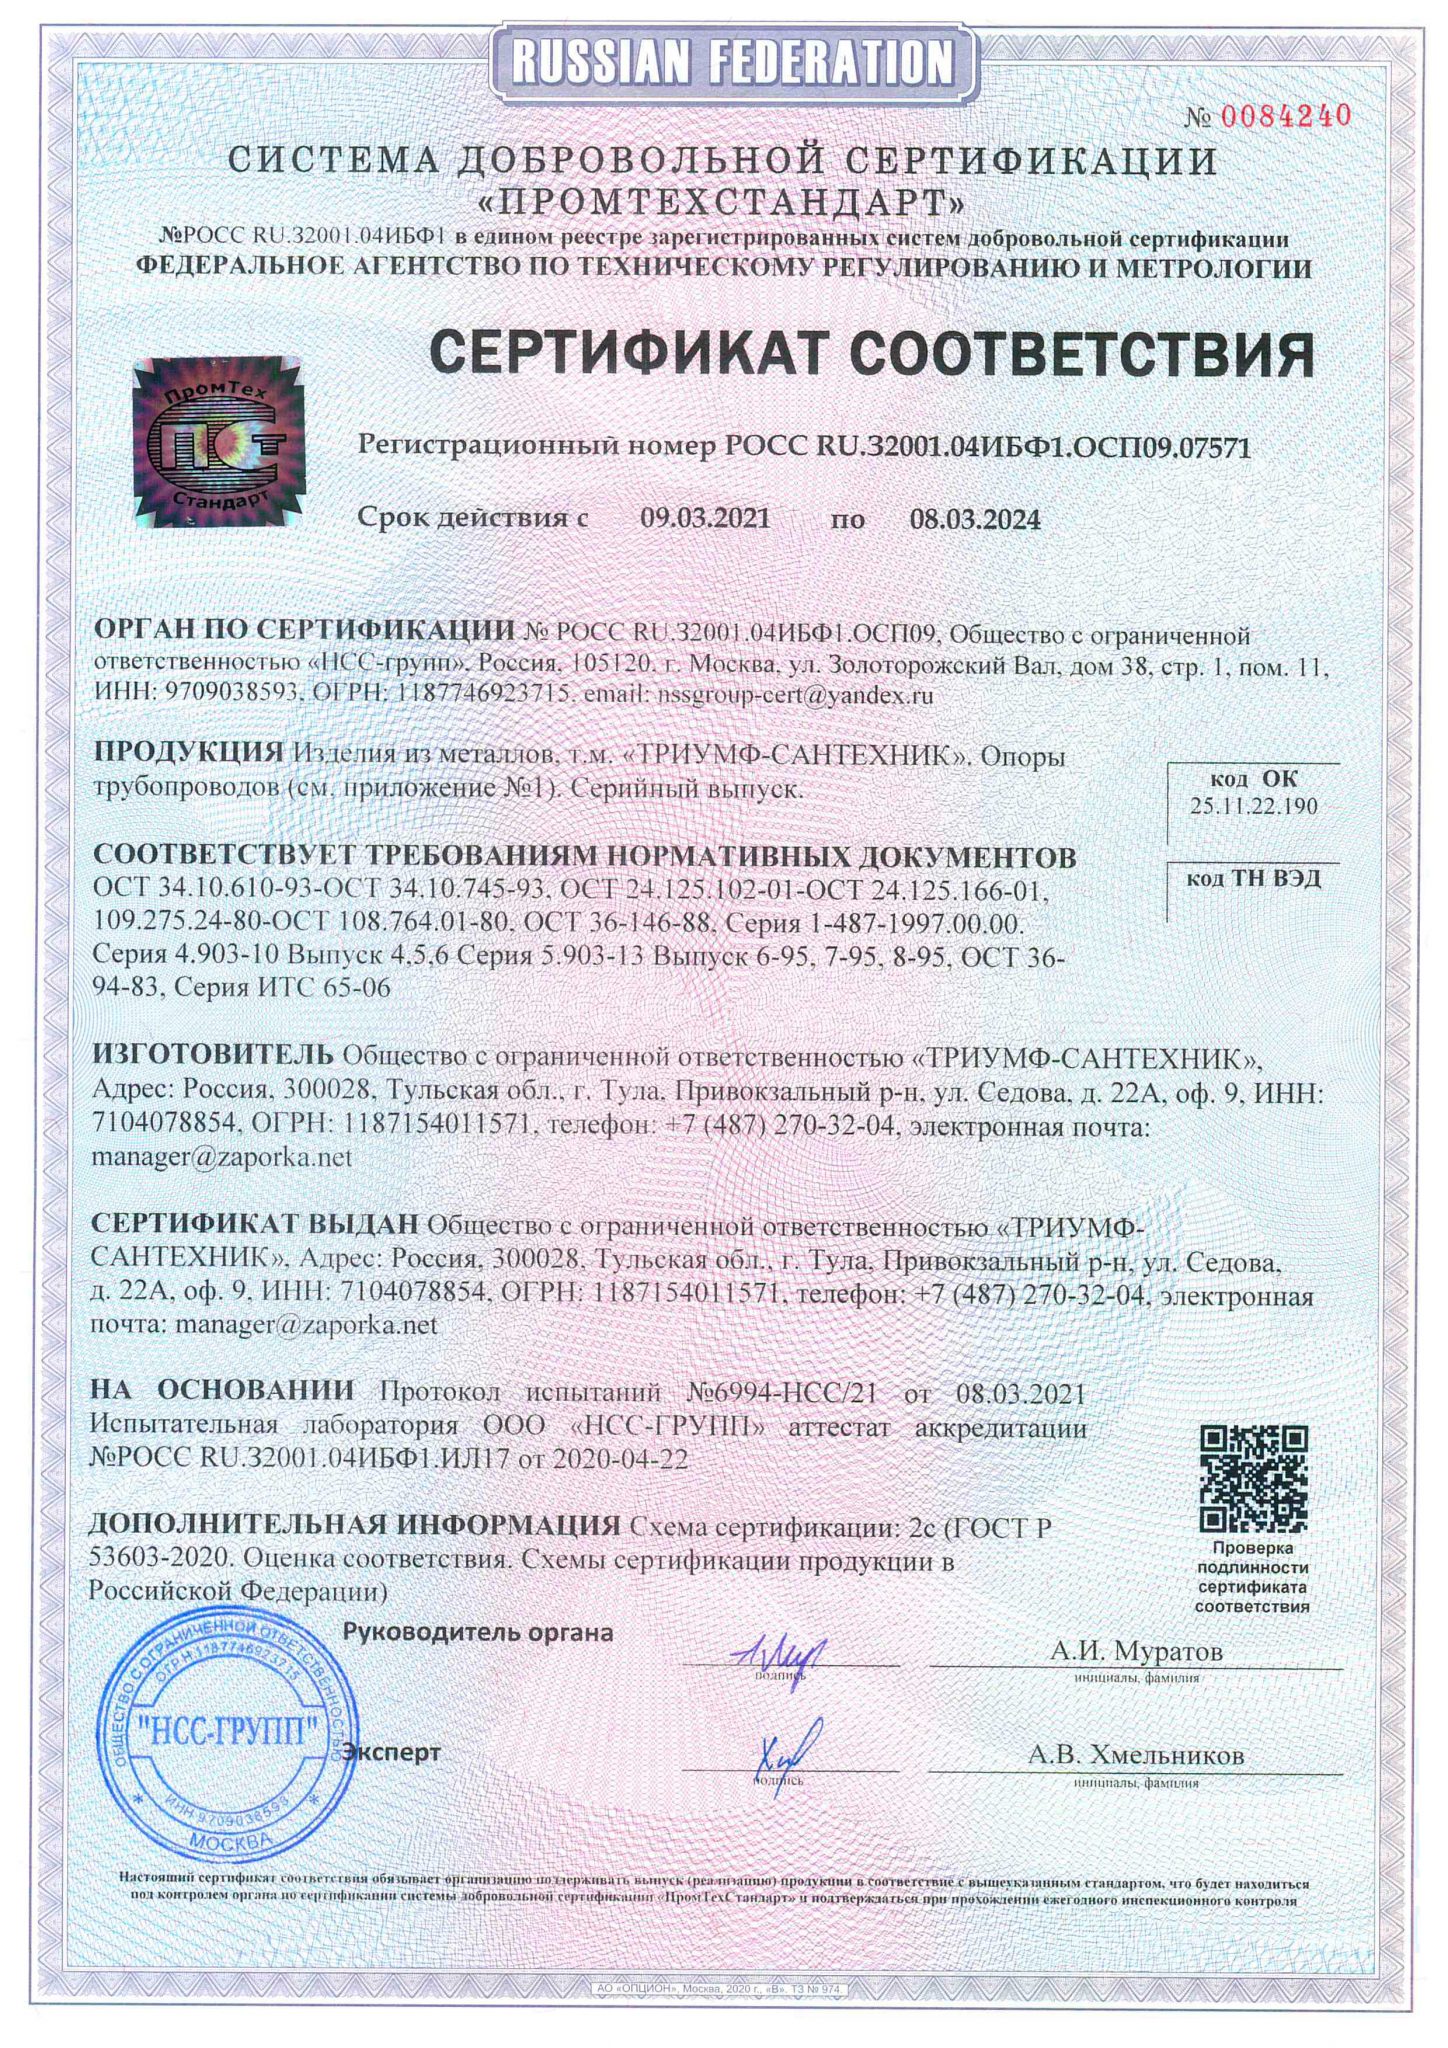 Сертификат на мебельную продукцию